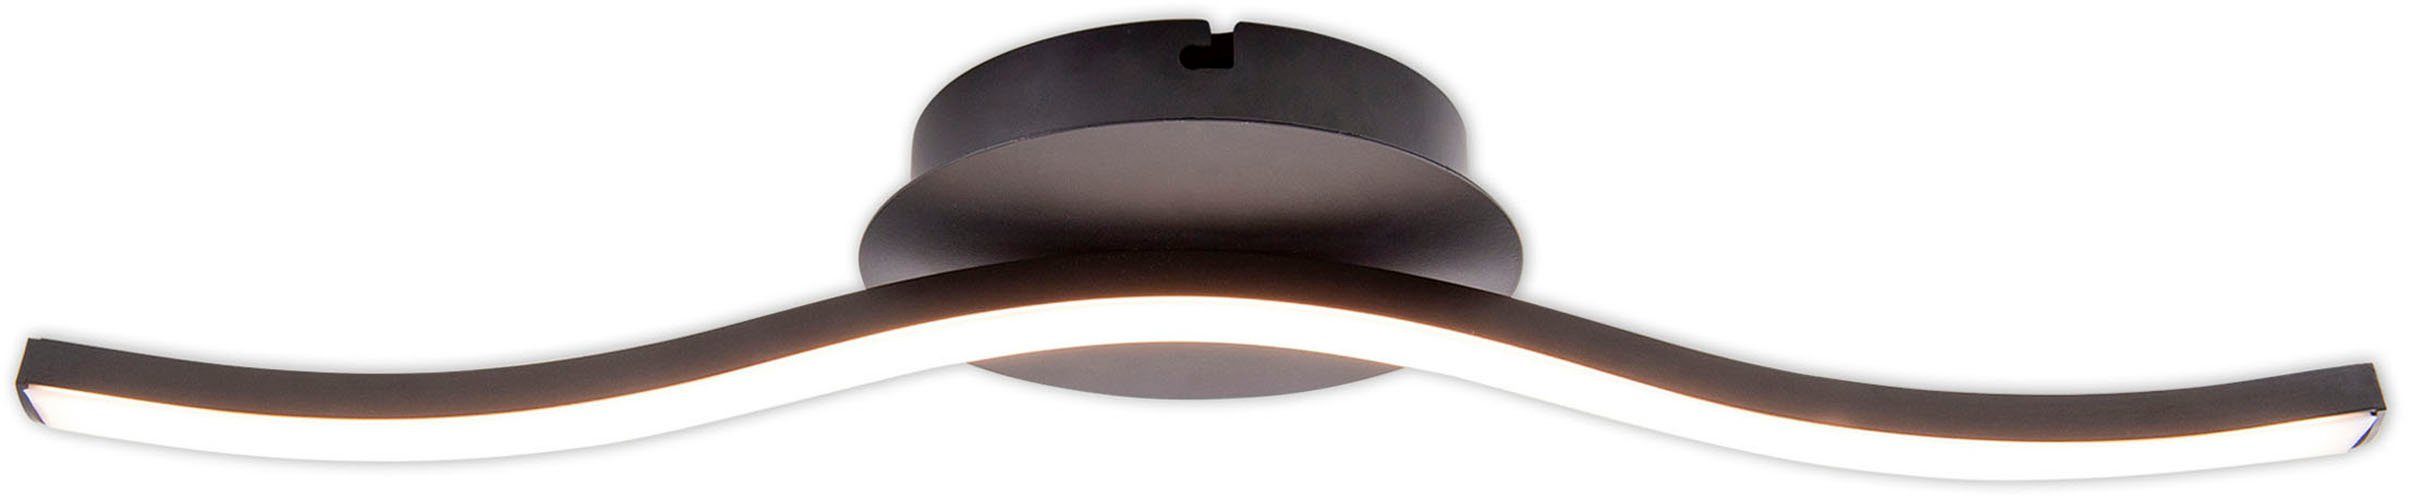 warmweiß, Wandleuchte Deckenlampe, LED Deckenleuchte 45cm, L: Onda, integriert, fest näve LED schwarz-matt, 6W, Warmweiß, IP20